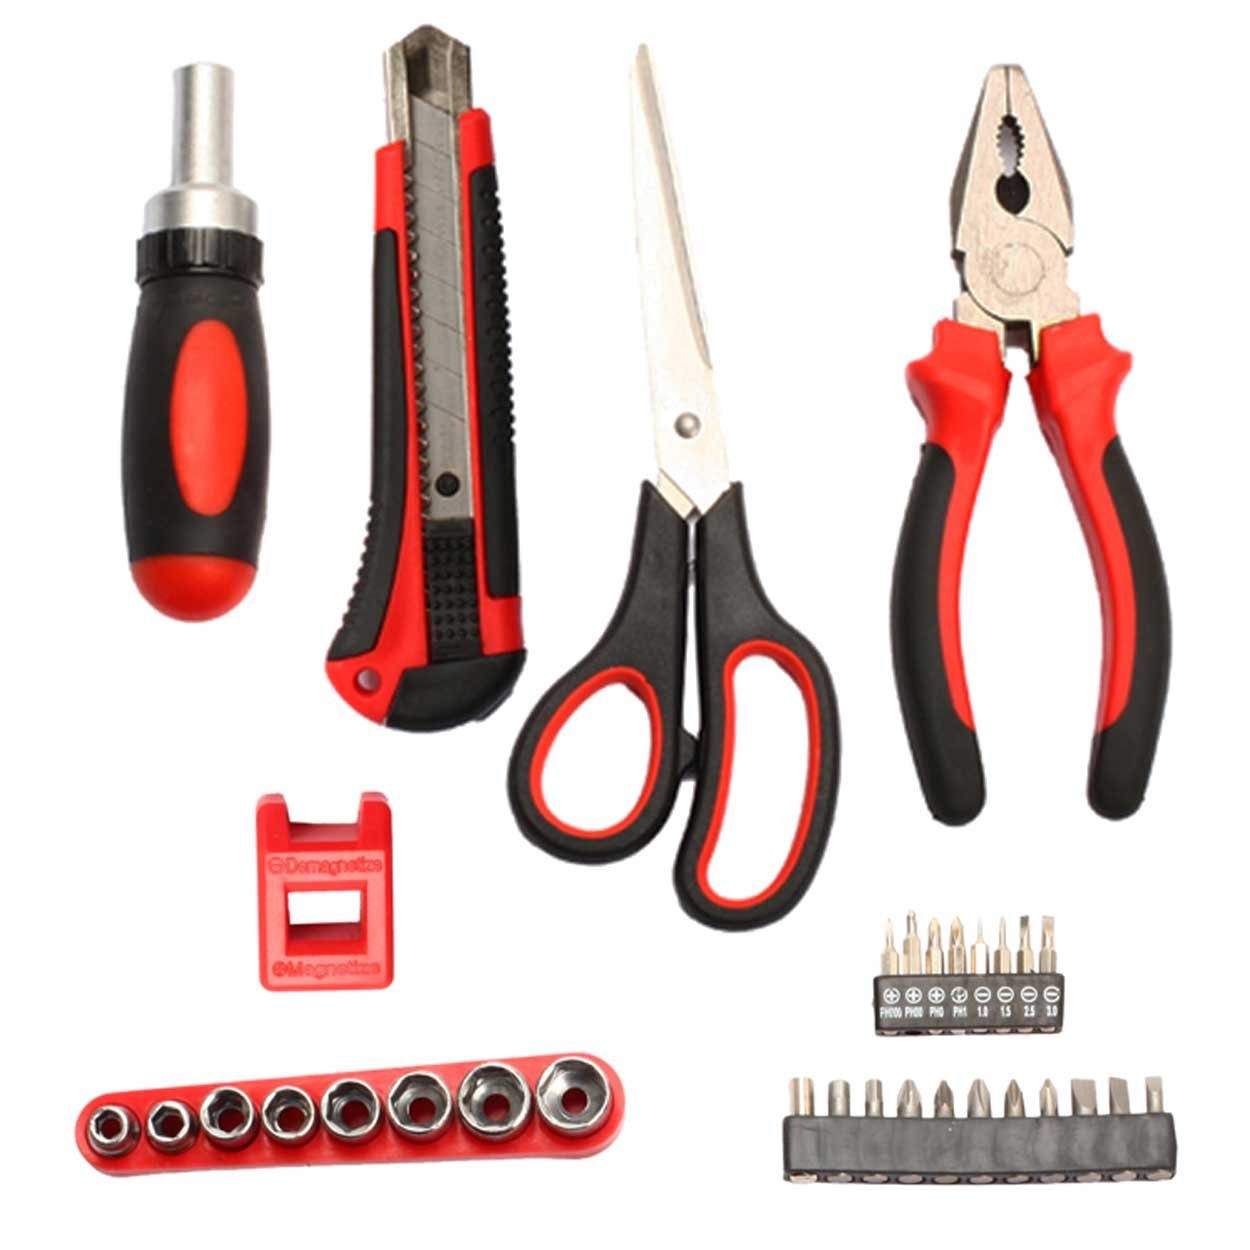 SCHMIDT security tools Werkzeugset Set 32-teilig TS-32 Werkzeugsatz Box Handwerkzeug Werkzeugkoffer